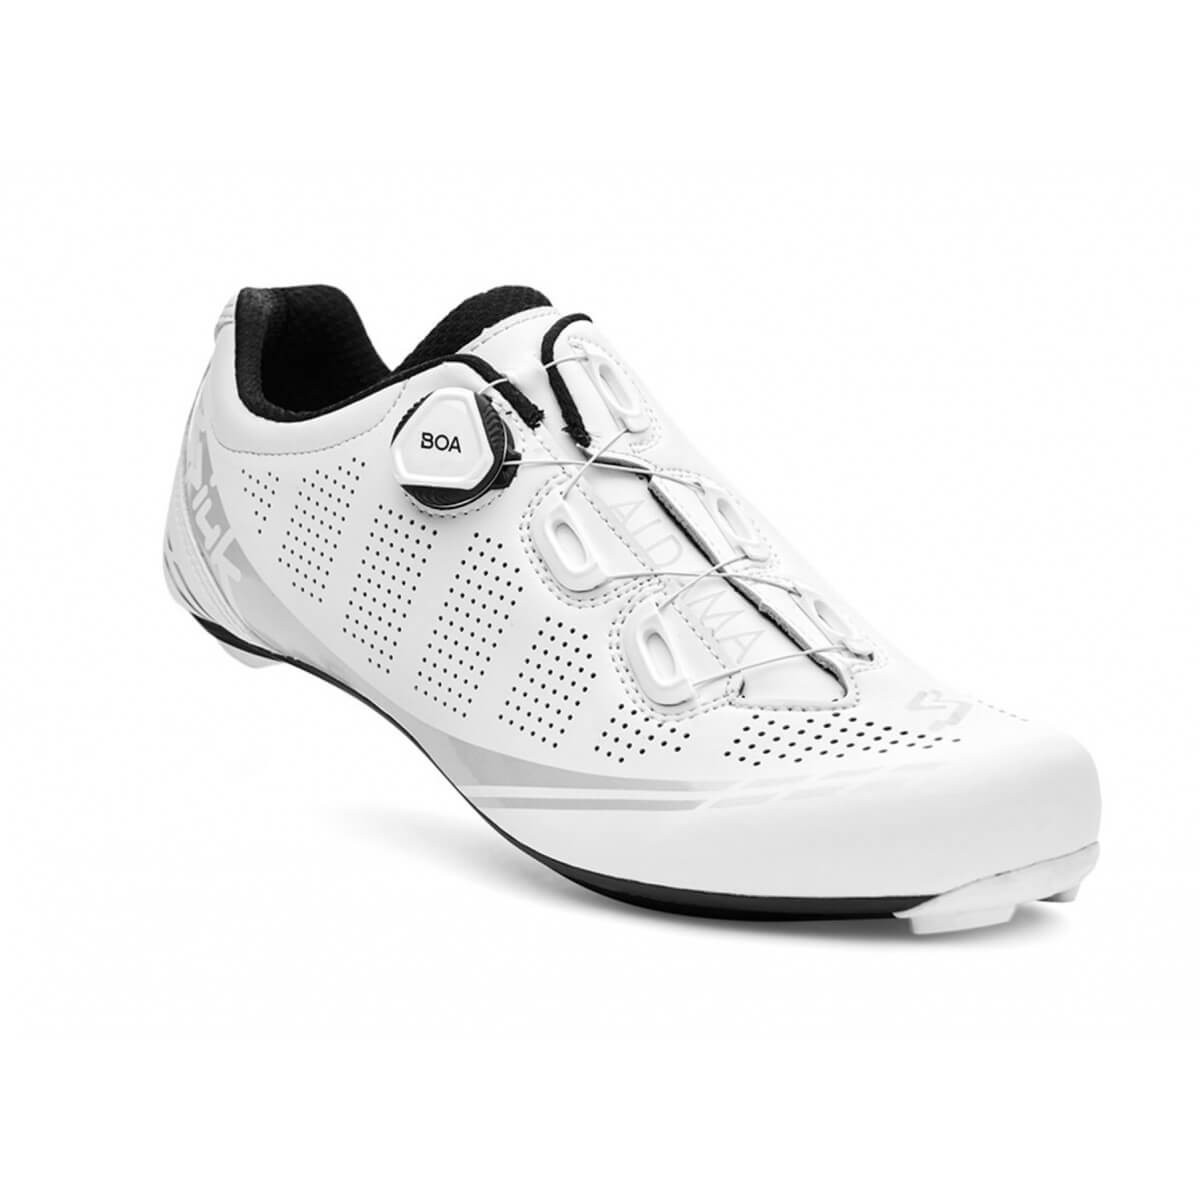 Spiuk Aldama Road Carbon Matt White Shoes, Size 41 - EUR